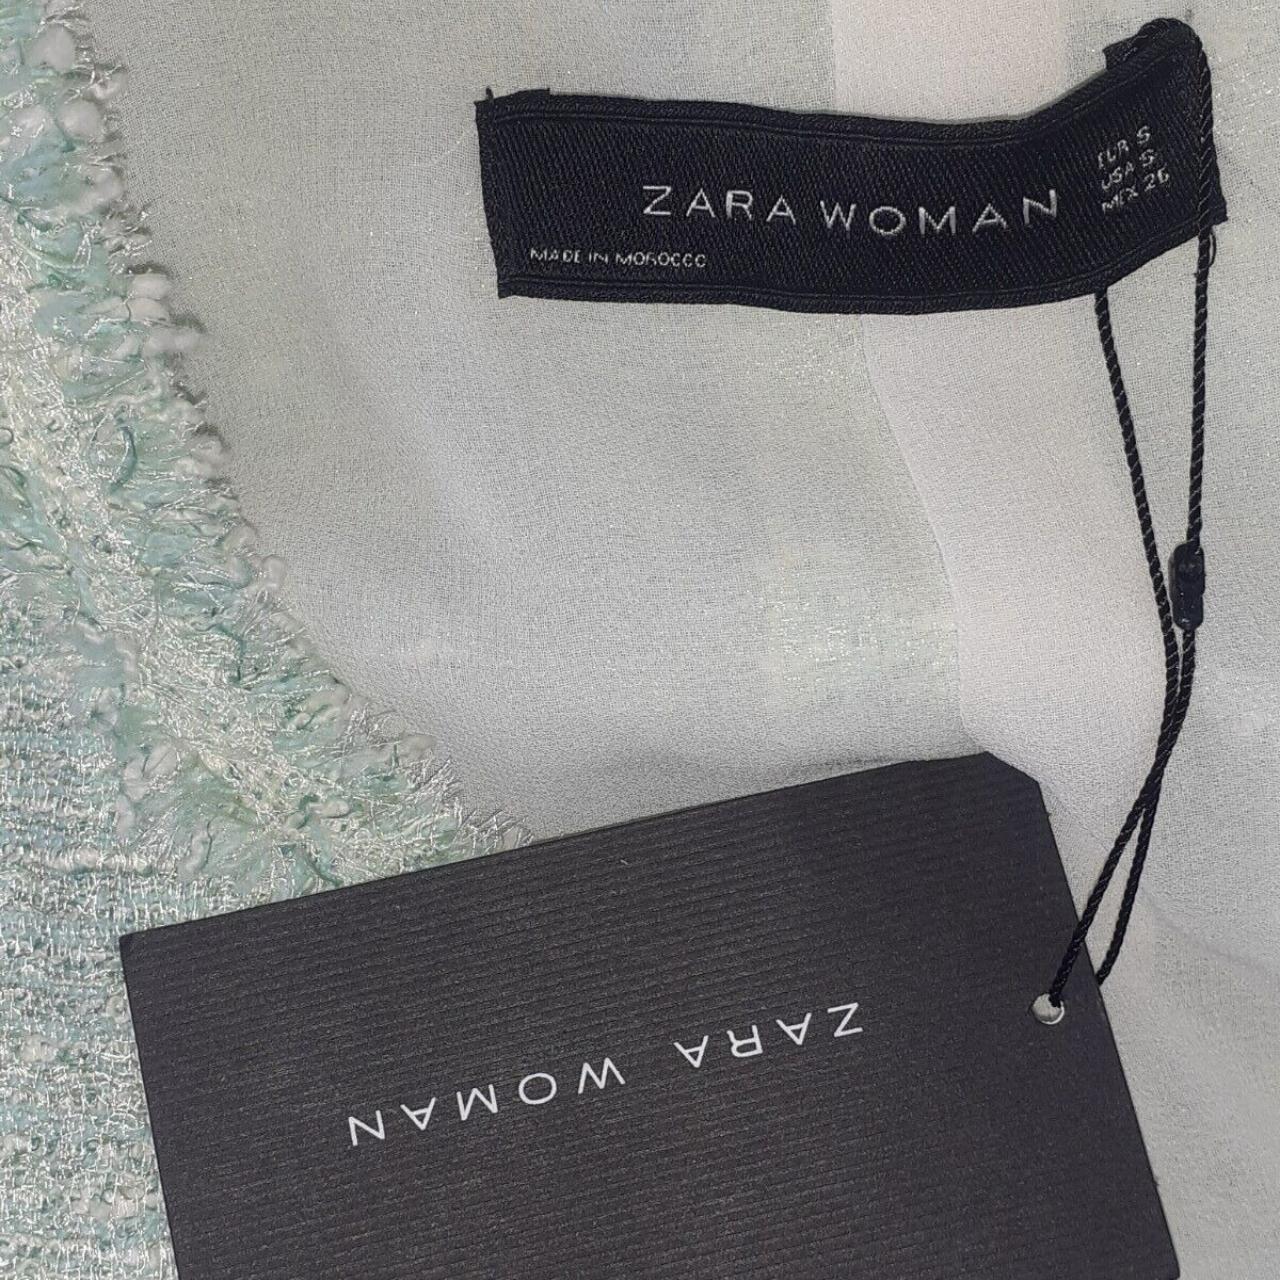 Ladies Size UK 8 10 EU 36 38 BNWT Zara Blazer Zara... - Depop